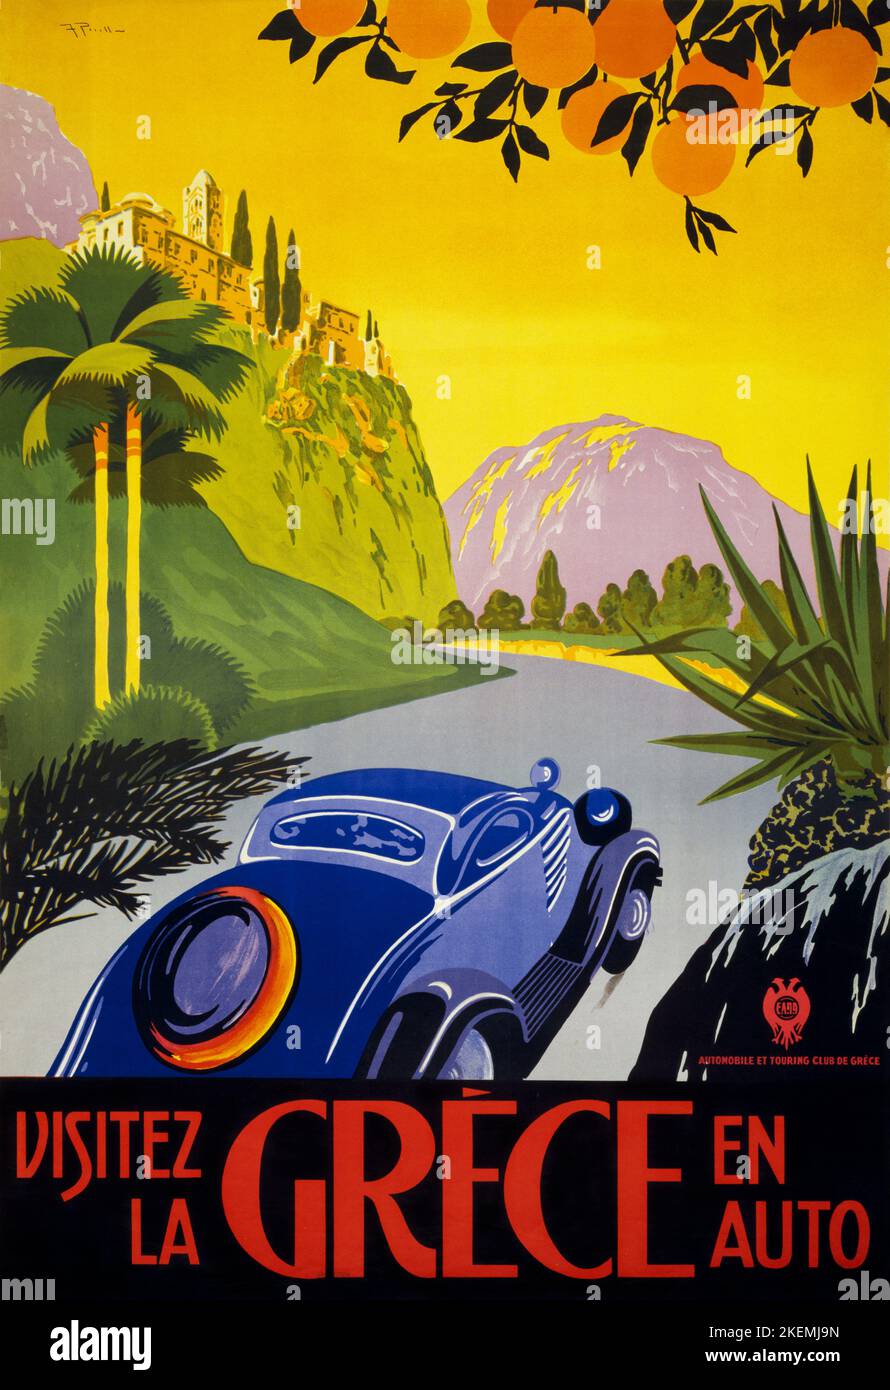 Visitez la Grèce en auto par F.P. (dates inconnues). Affiche publiée en 1930. Banque D'Images